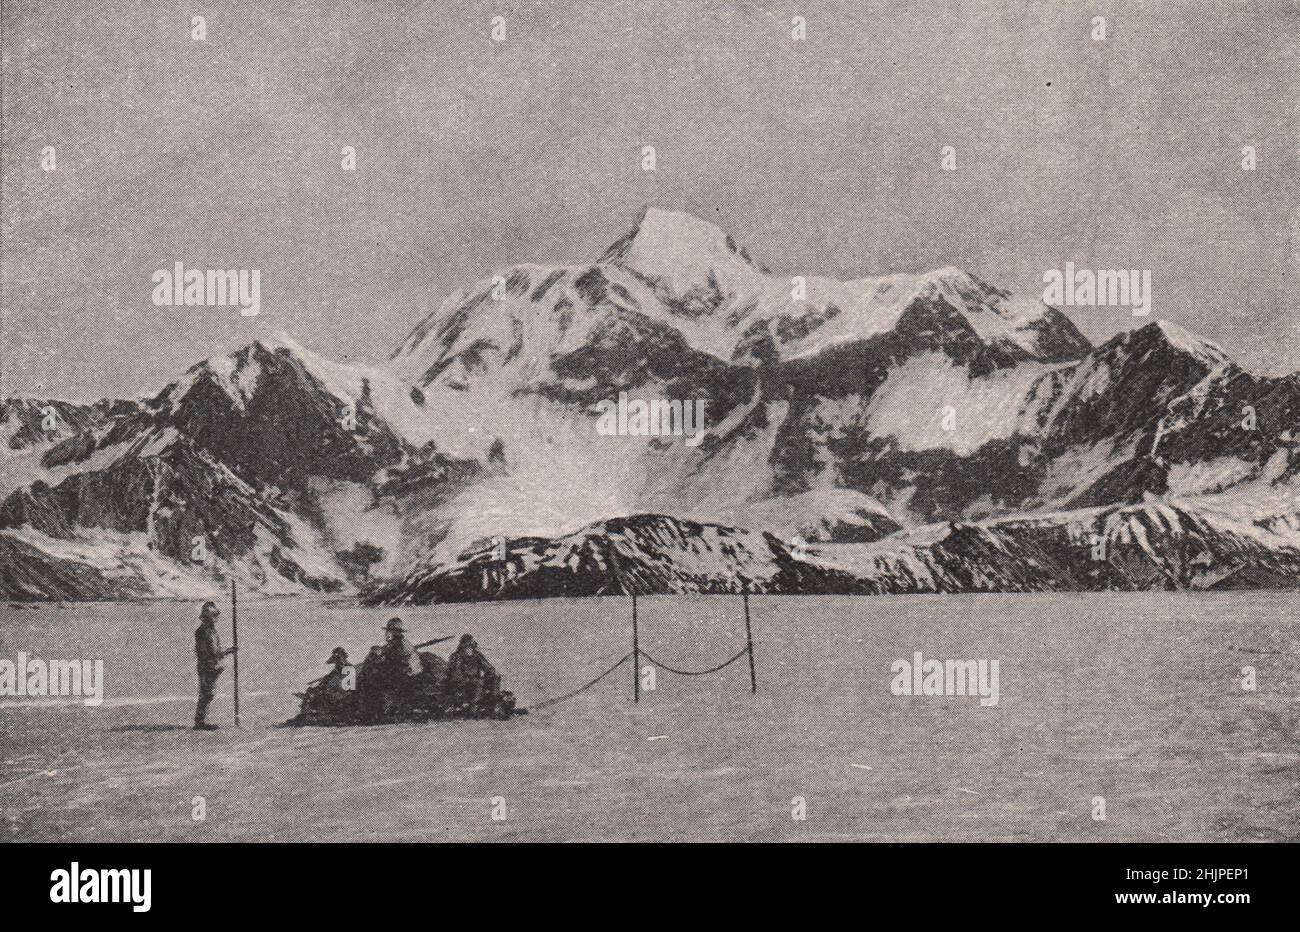 Costeggiando la faccia meridionale del Monte Sant'Elia, rivestito di neve. Alaska (1923) Foto Stock